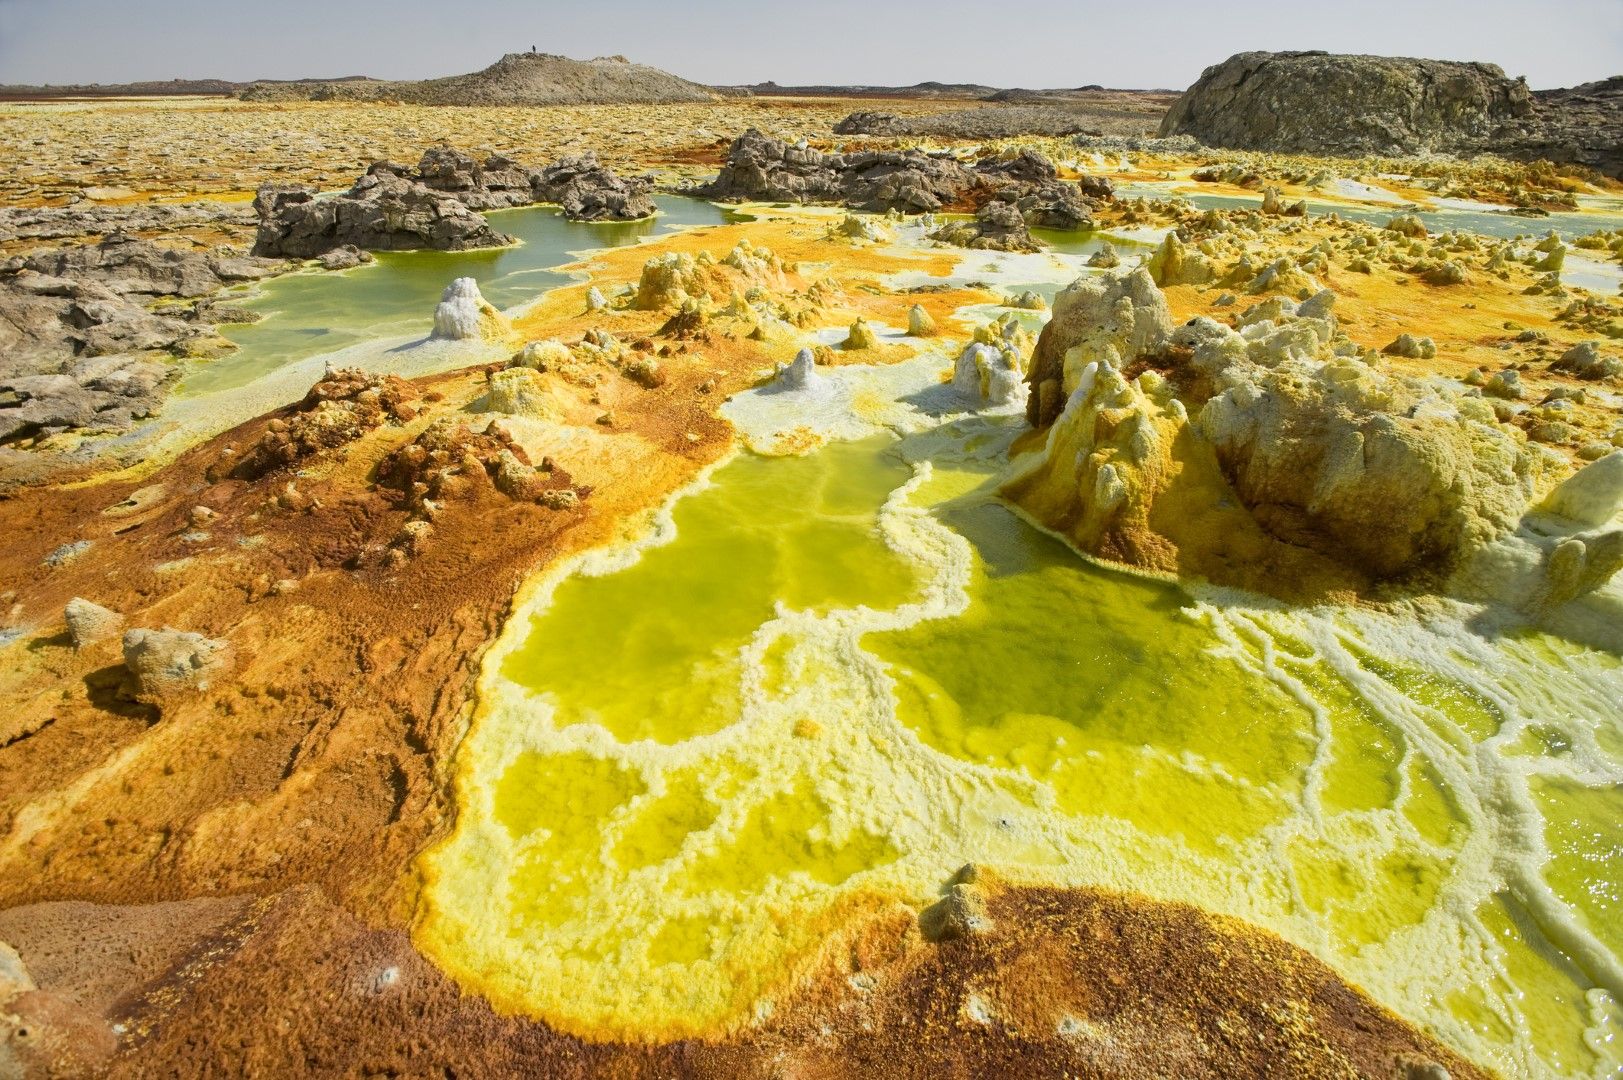 Термалните извори и вулканичната дейност са довели до създаването на нереалните цветни пейзажи в Данакил, Етиопия